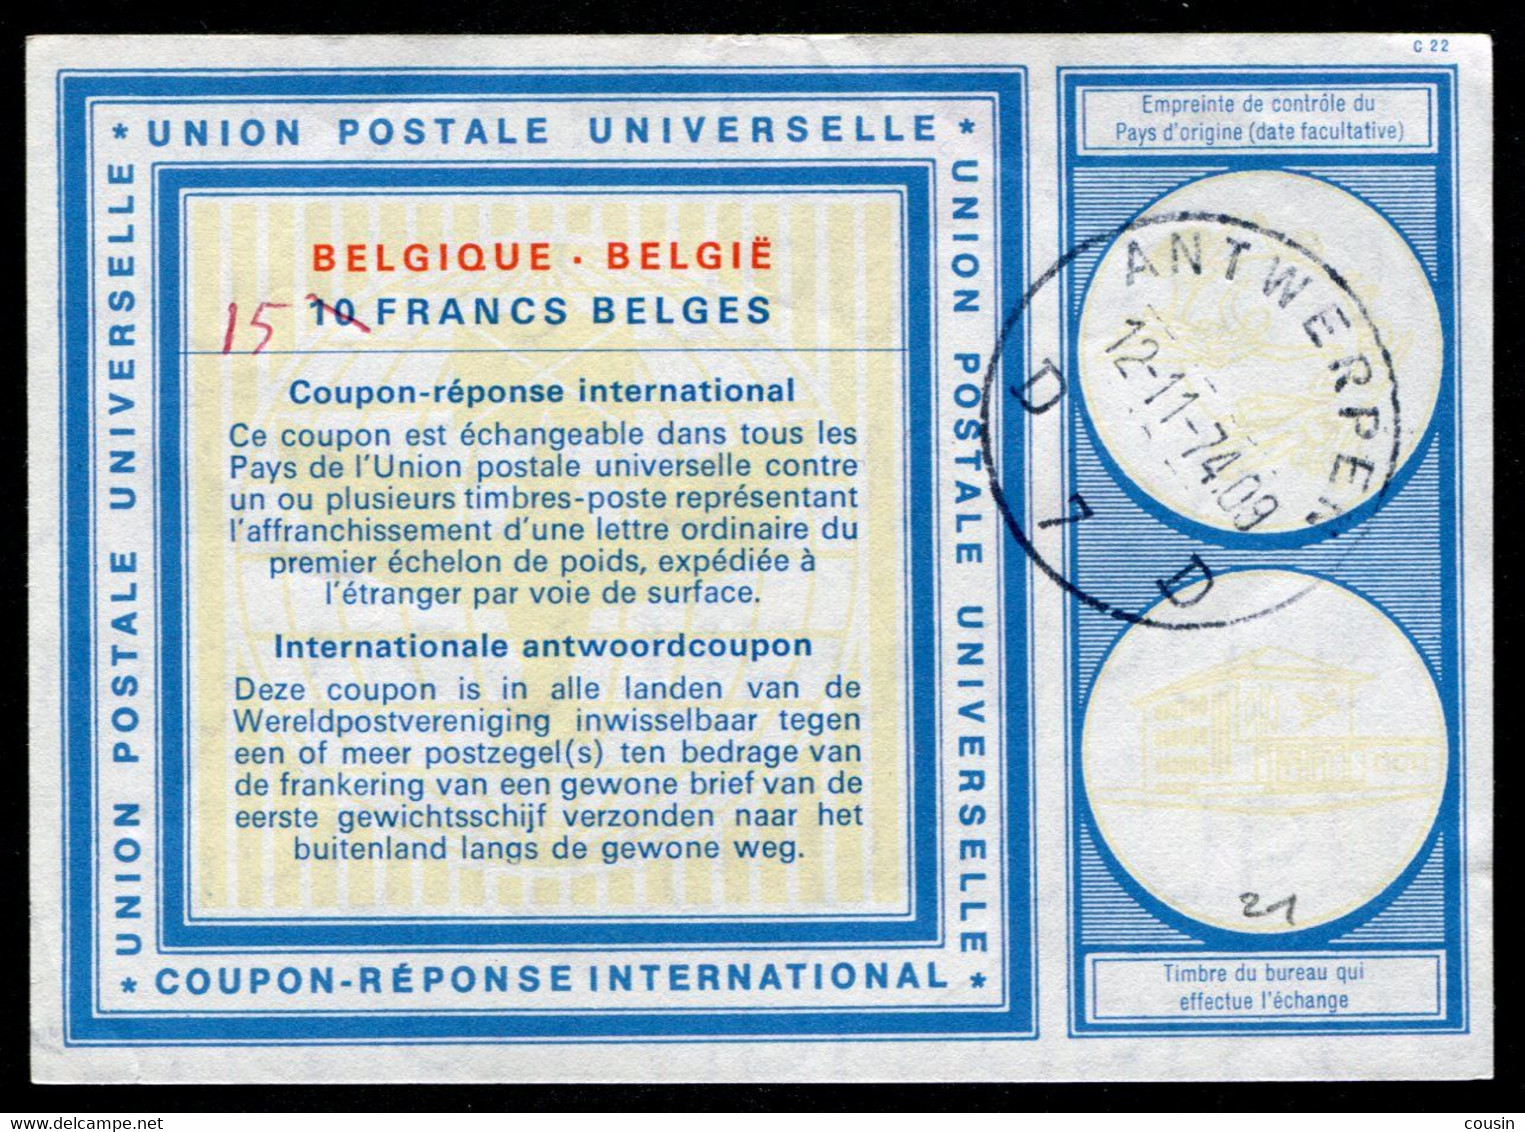 BELGIQUE  International Reply Coupon / Coupon Réponse International - Cupón-respuesta Internacionales